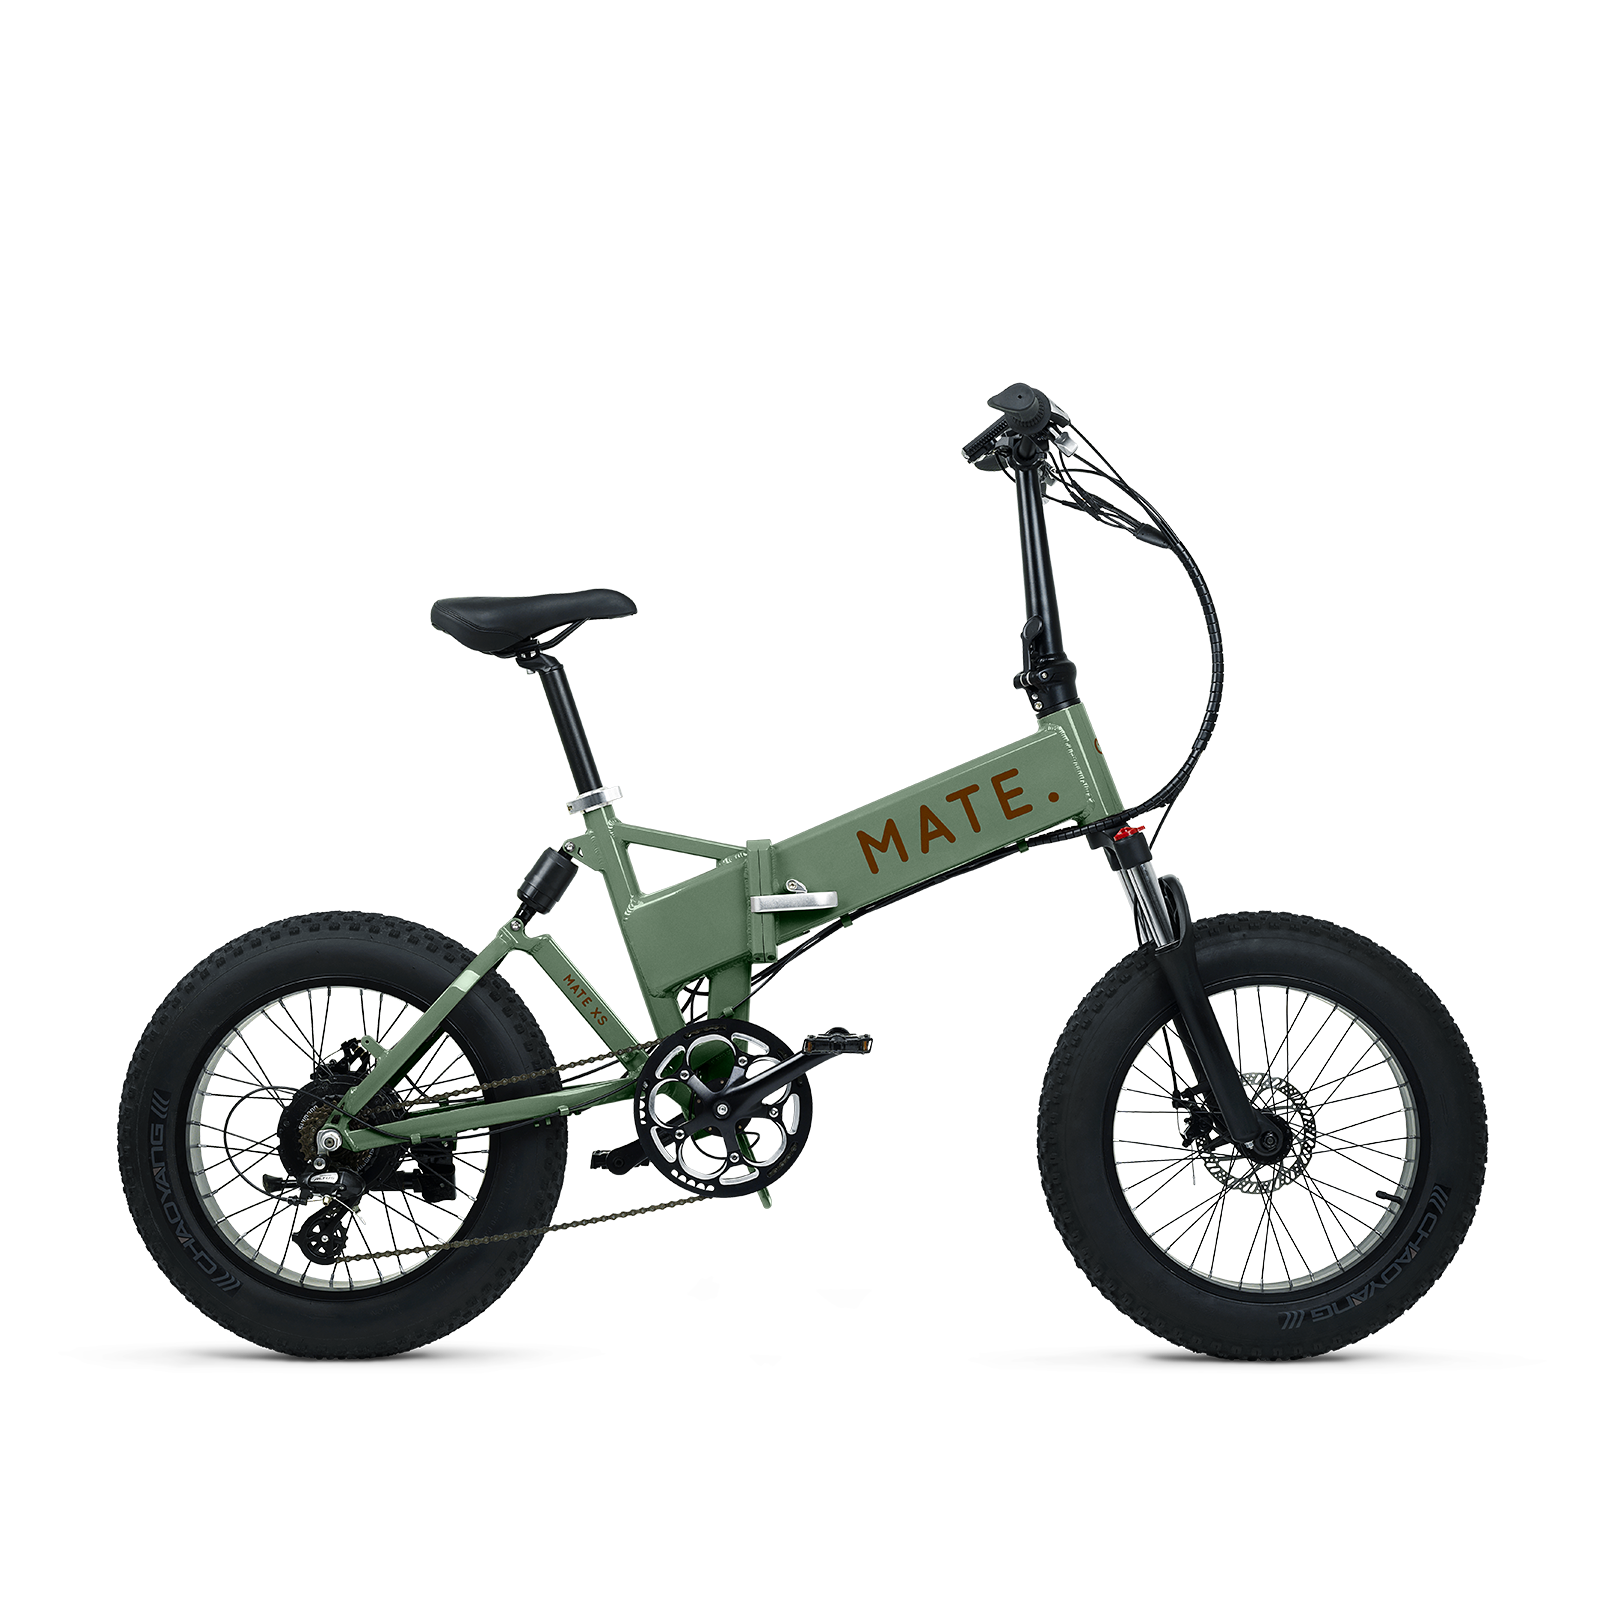 Közlekedj okosan! Ismerd meg a Mate Bike elektromos biciklit - Glamour